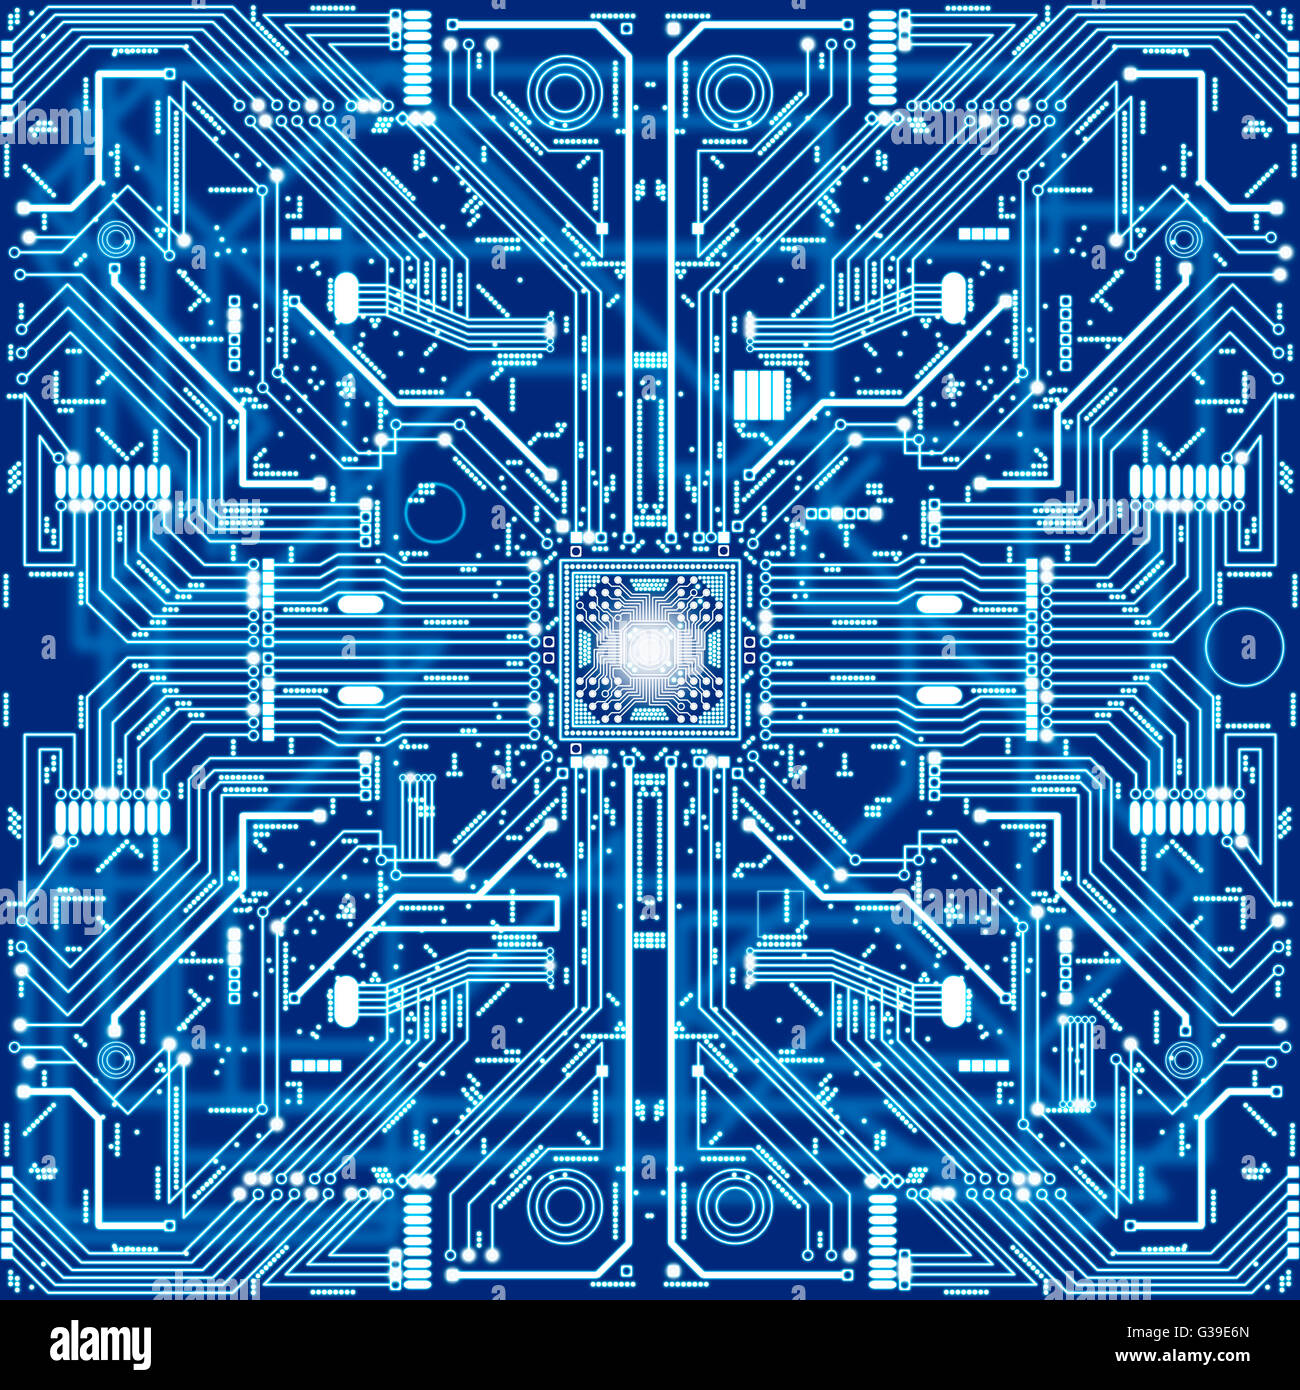 Seamless texture d'une carte de circuit imprimé ou électronique Banque D'Images